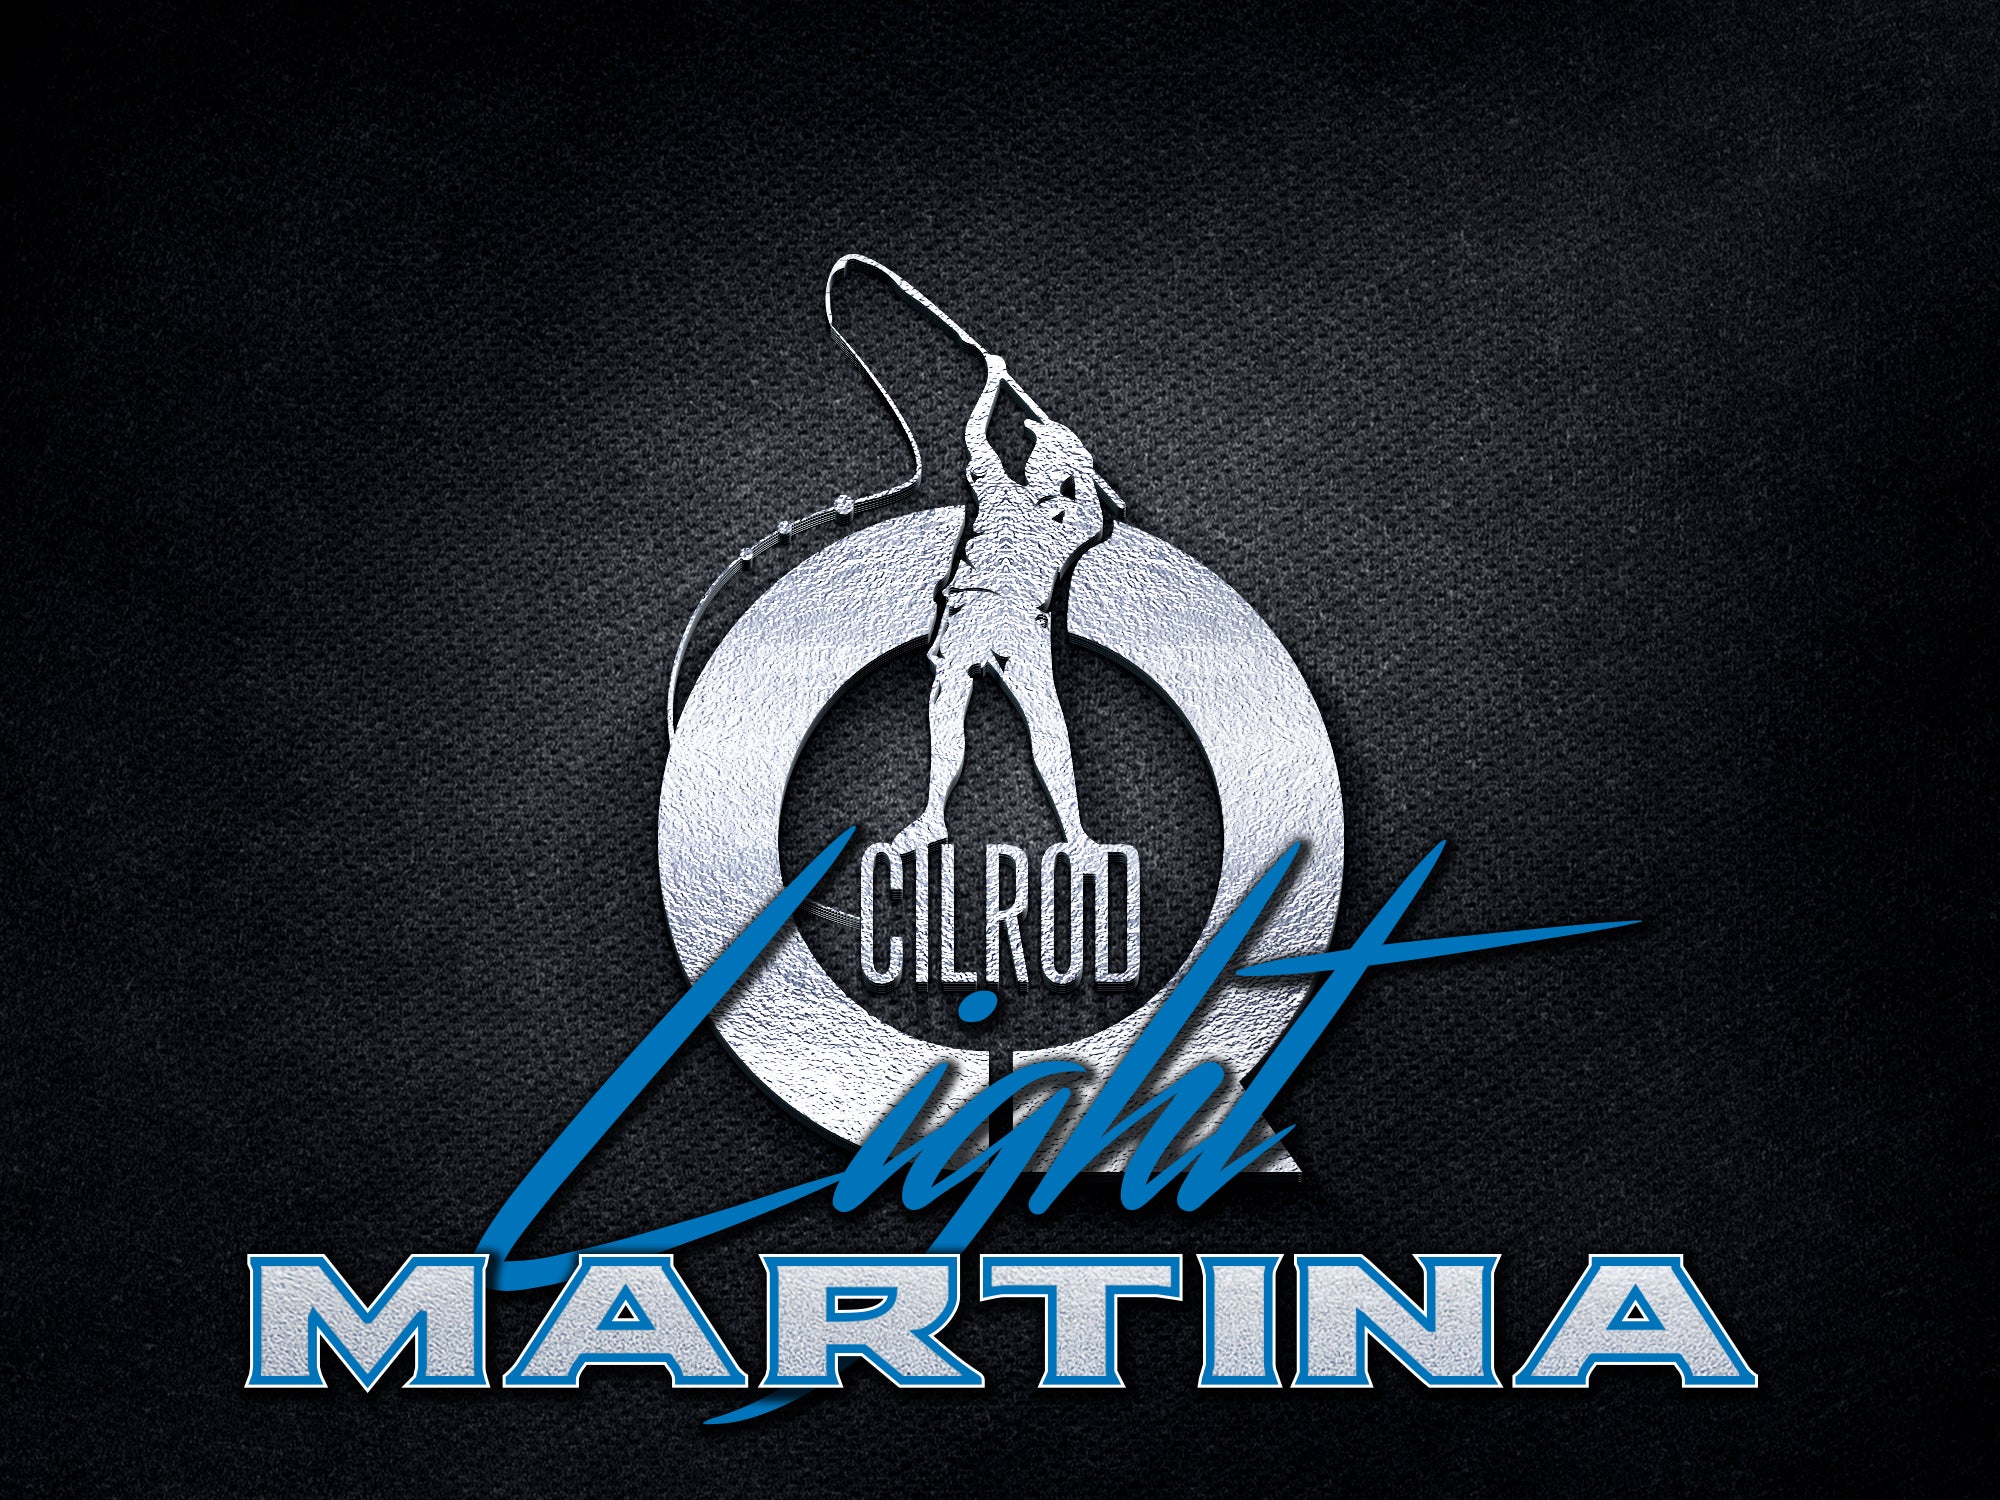 CILROD MARTINA BOLO LIGHT MONTATE IN PRONTA CONSEGNA